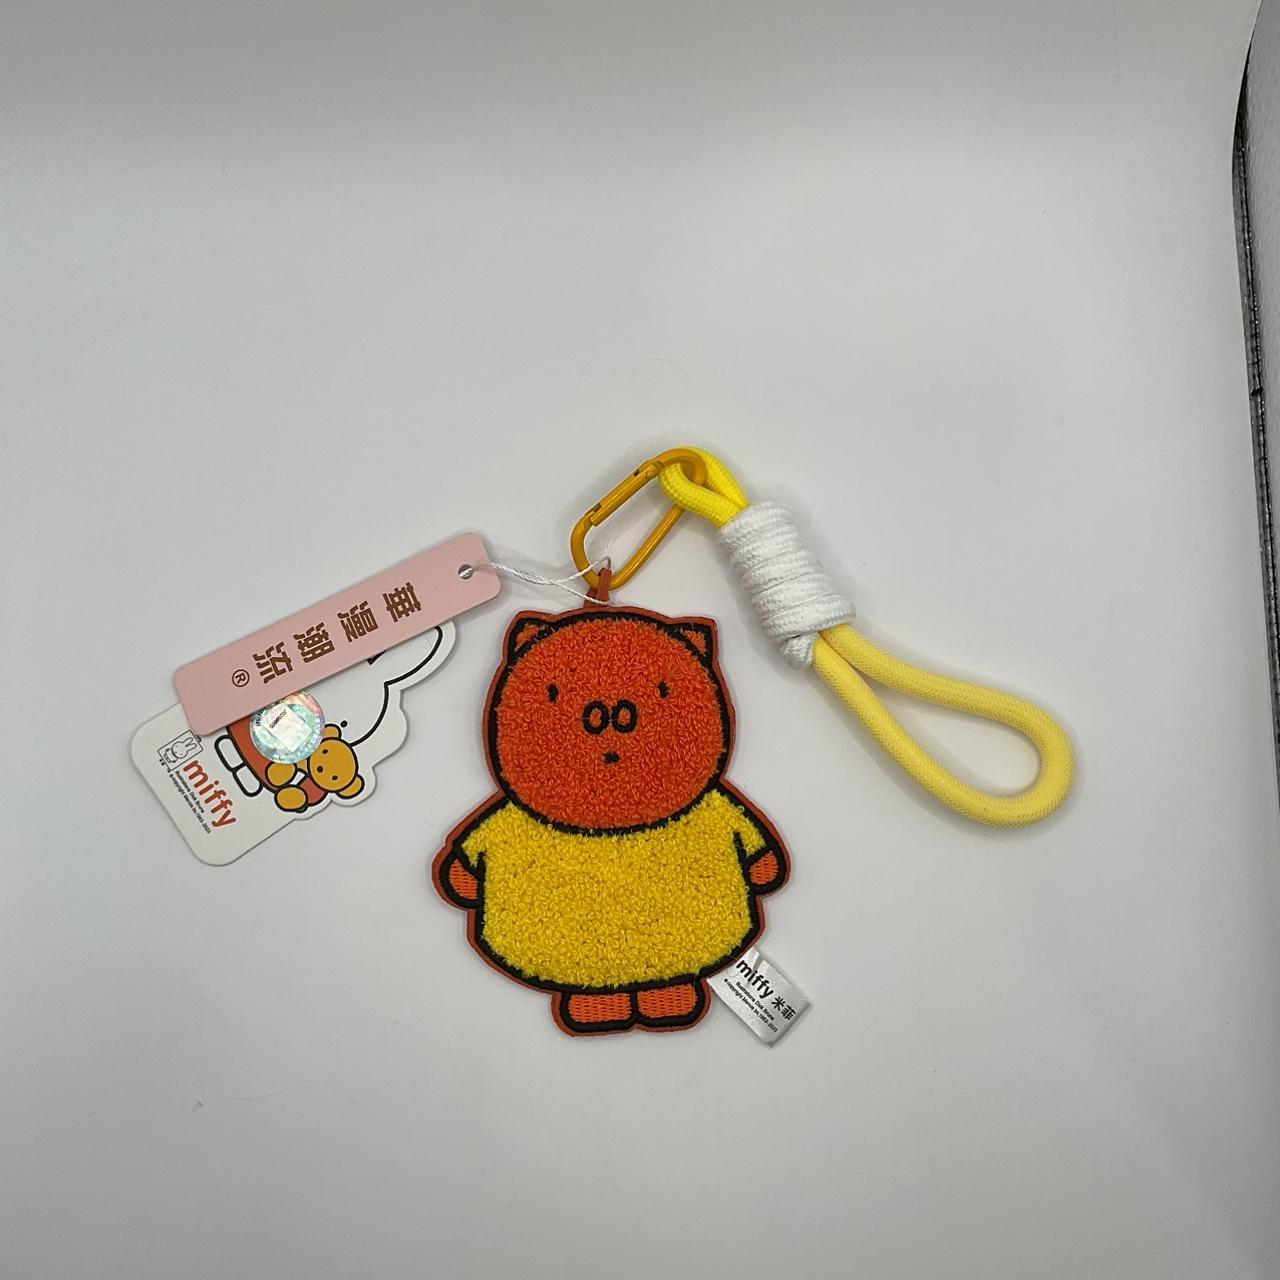 Squishy Miffy keychain (brand new) - Depop